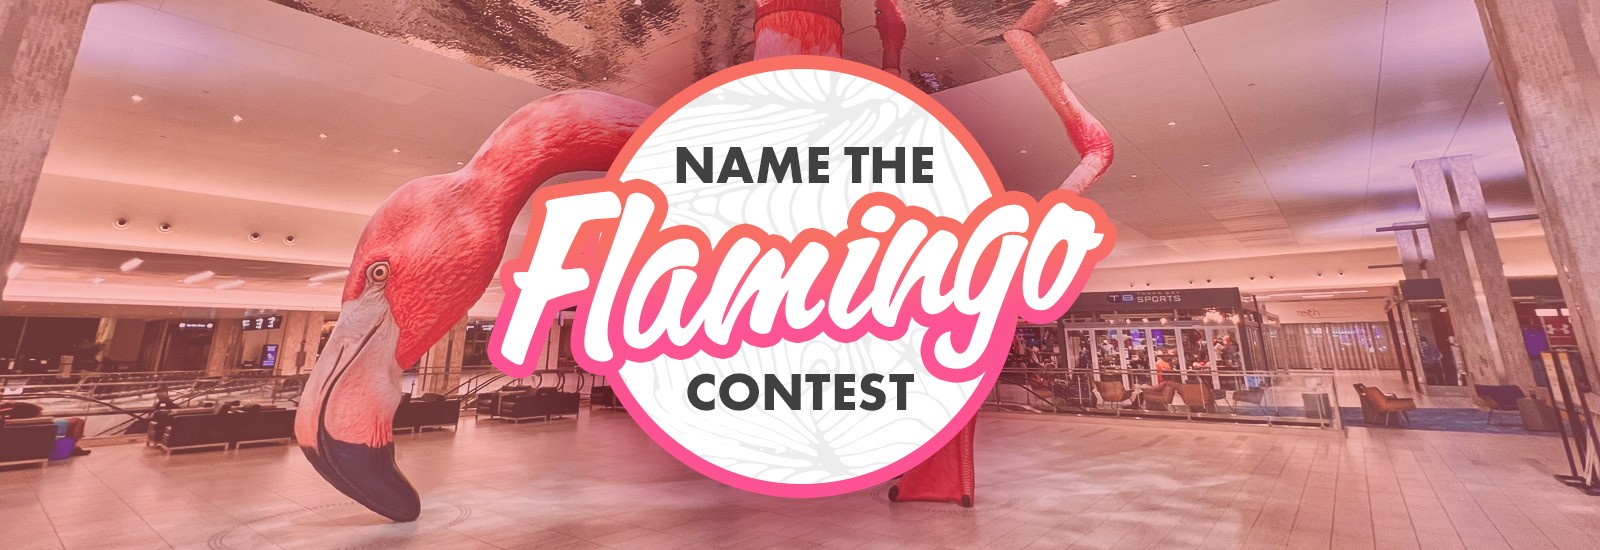 Name the Flamingo